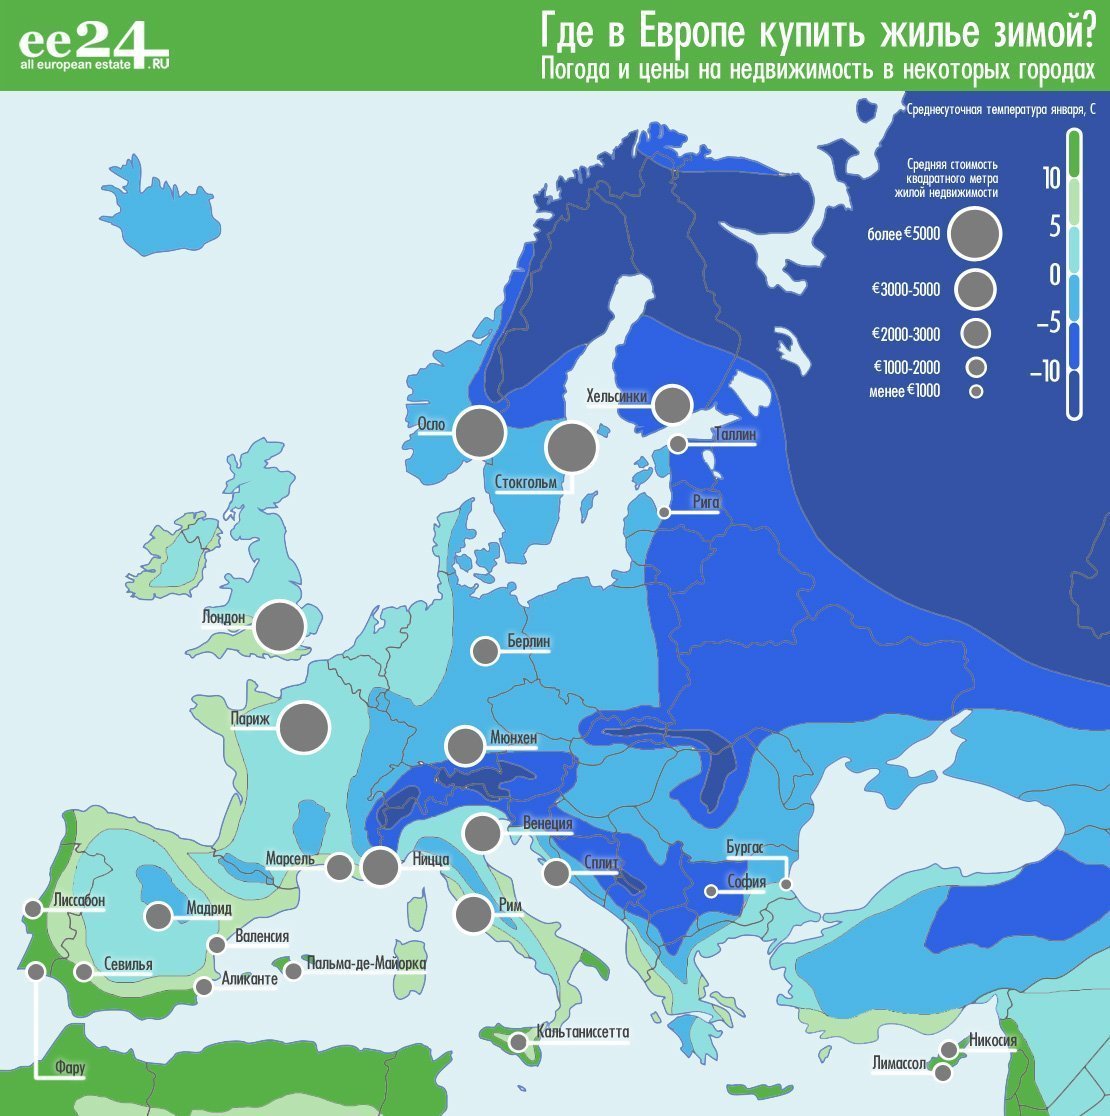 Растопим лед! Где в Европе купить жилье зимой? | Фотография 2 | ee24